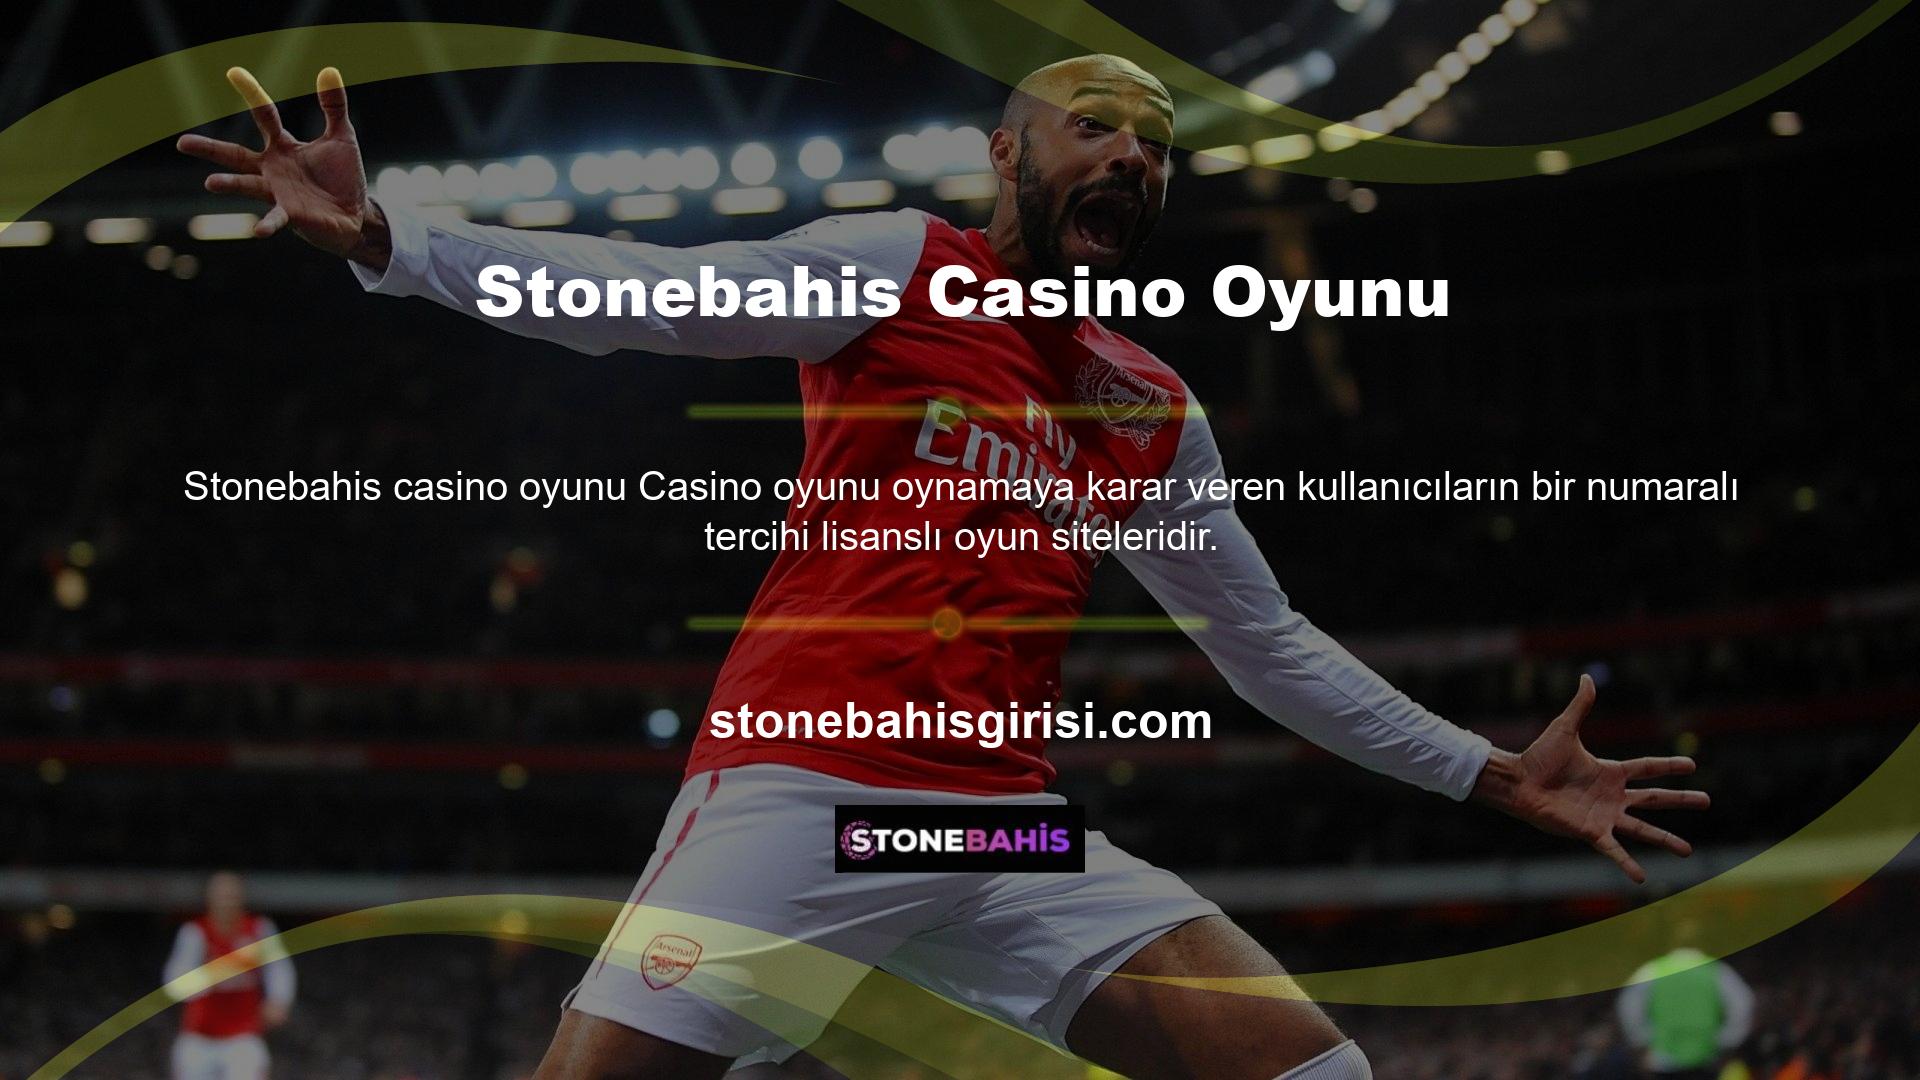 Stonebahis bahisleri lisansına sahiptir ve casino sunmaktadır